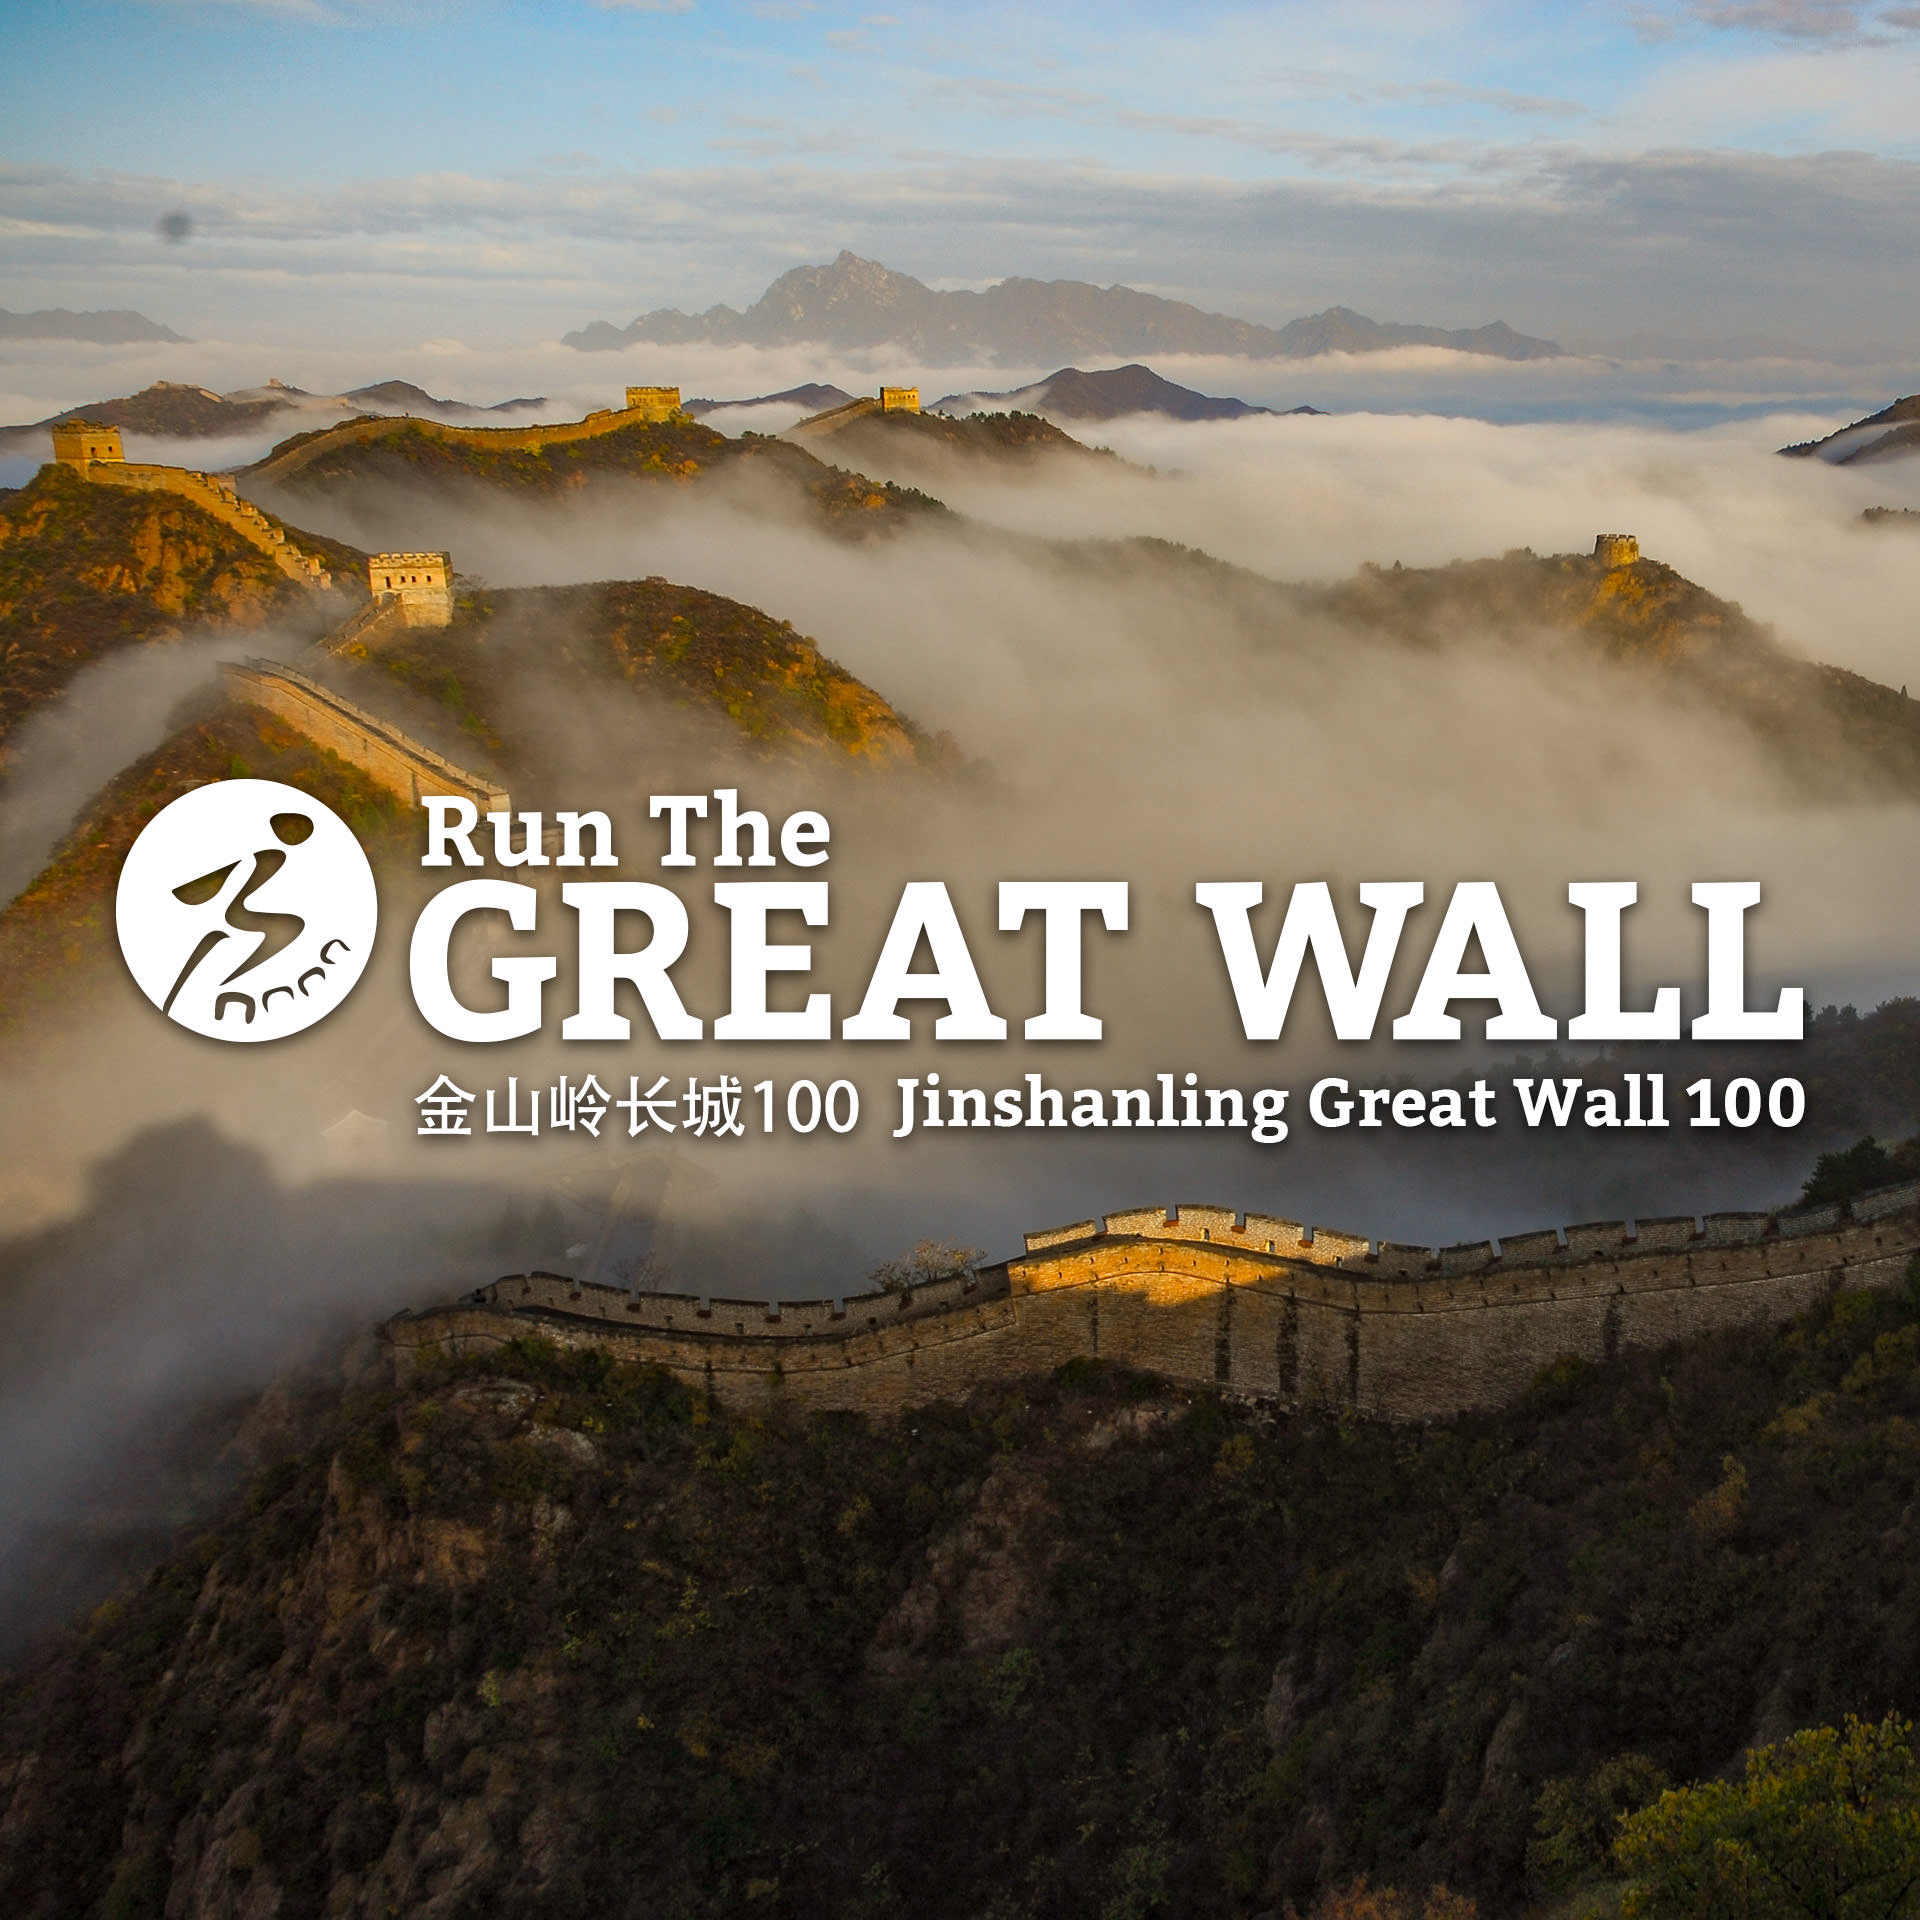 Jinshanling Great Wall 100 Ultra Trail